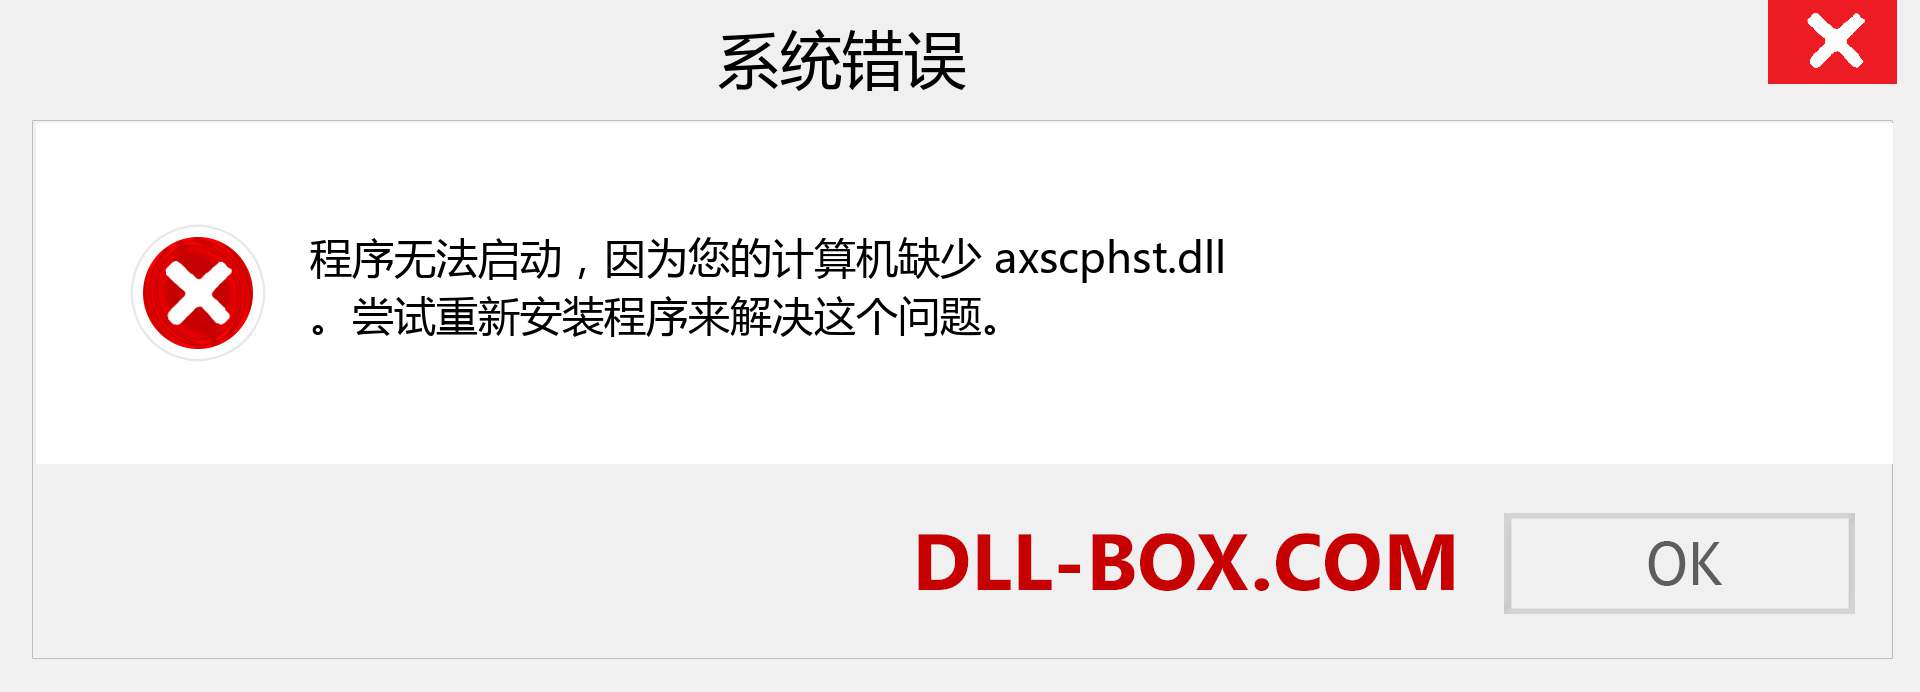 axscphst.dll 文件丢失？。 适用于 Windows 7、8、10 的下载 - 修复 Windows、照片、图像上的 axscphst dll 丢失错误